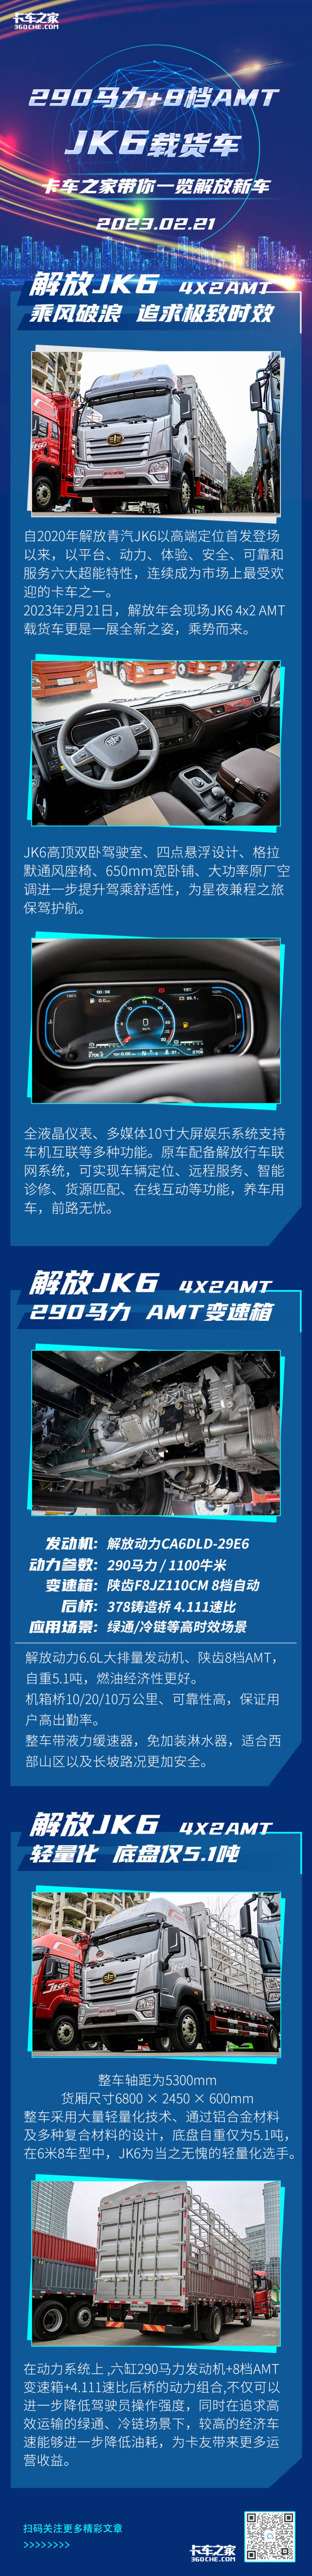 290大马力+自动档 解放JK6新车速览 6米8载货车天花板！